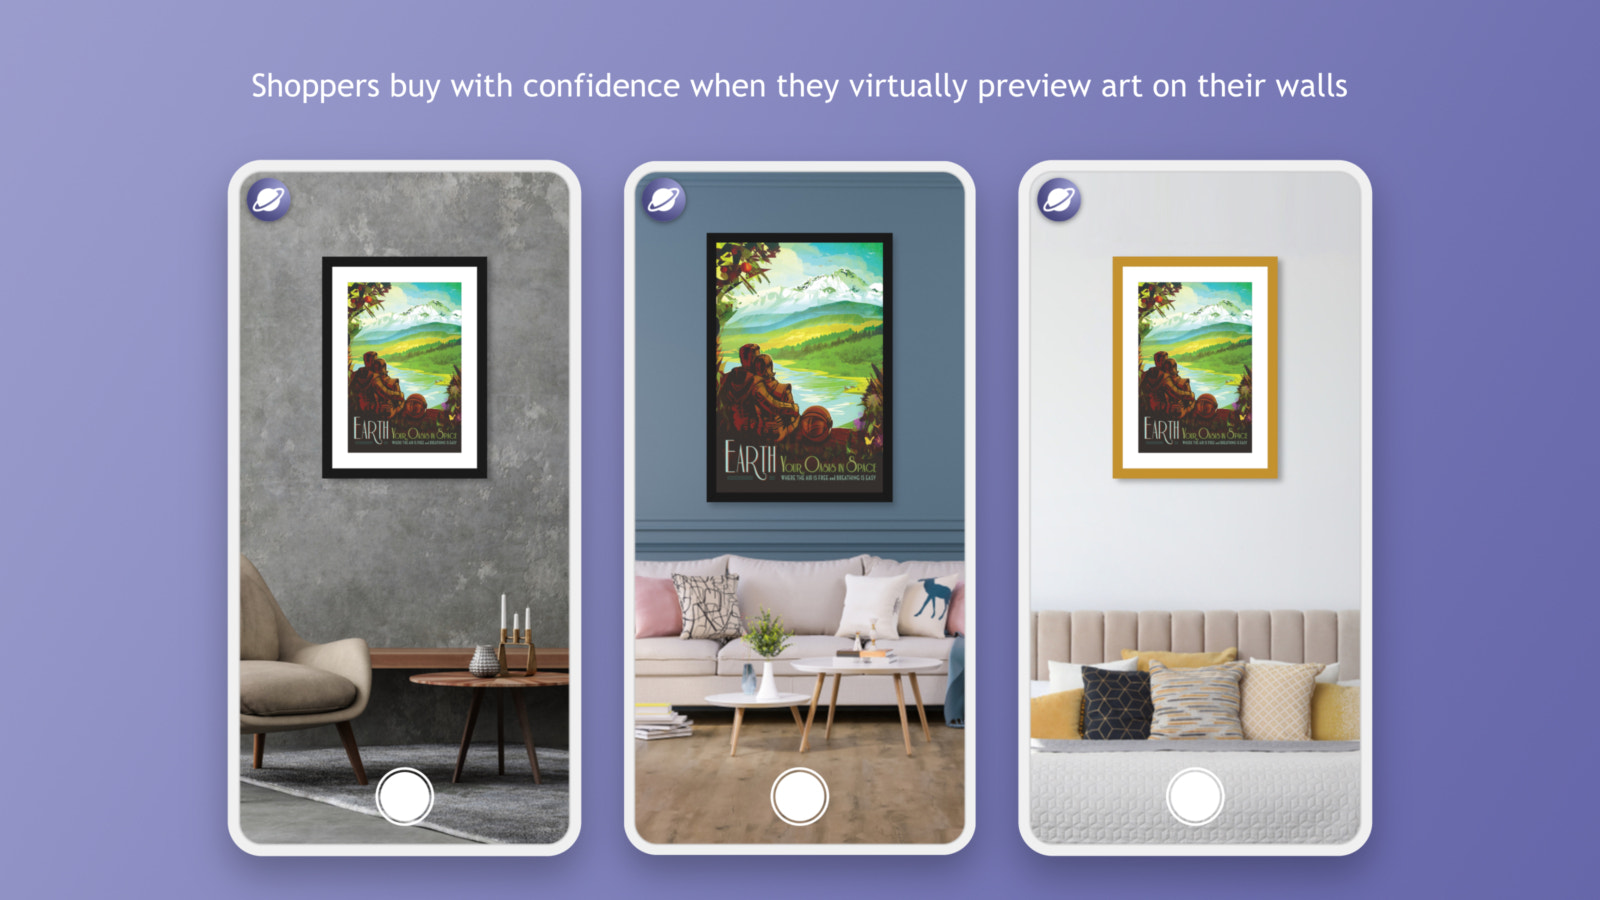 Os compradores compram com confiança quando visualizam arte virtualmente